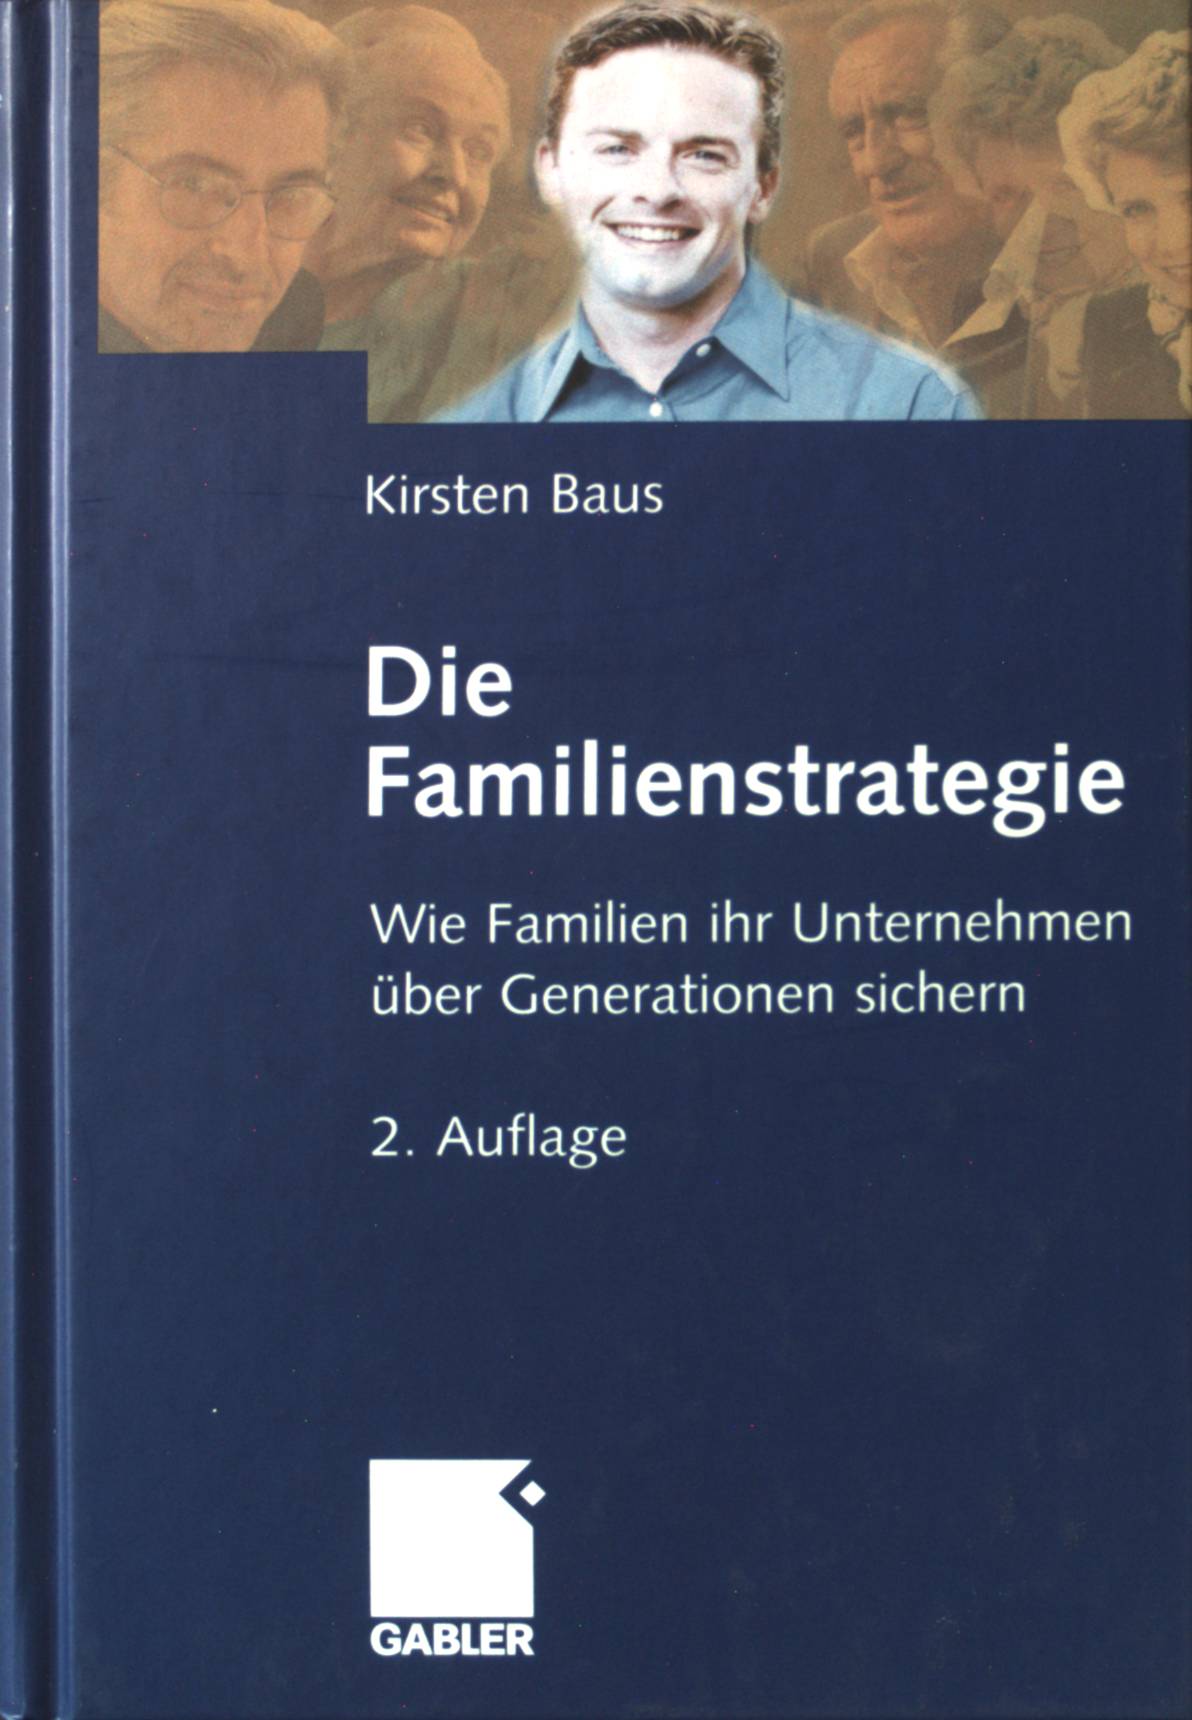 Die Familienstrategie : wie Familien ihr Unternehmen über Generationen sichern. - Baus, Kirsten